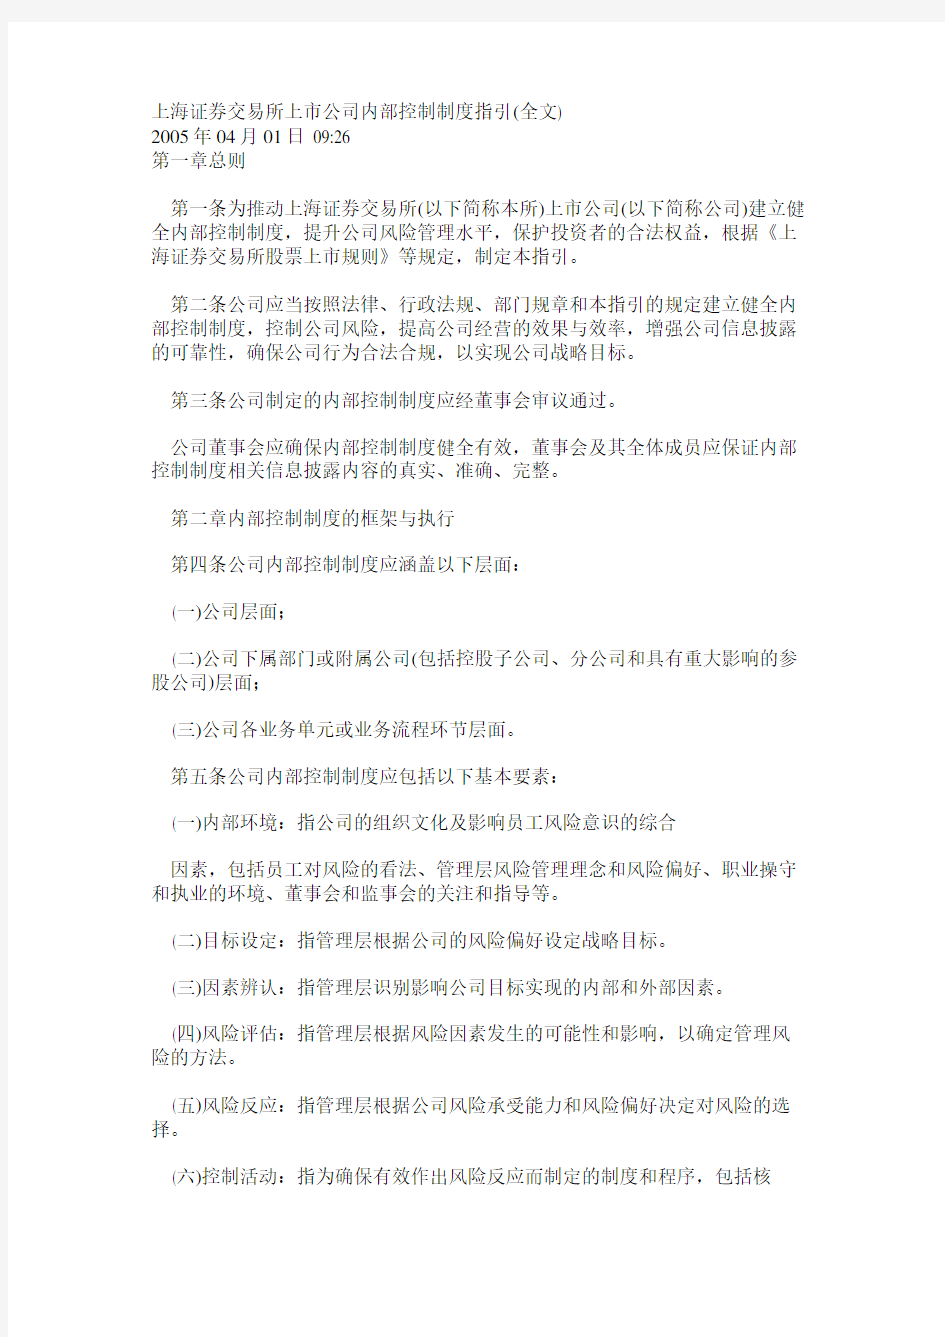 上海证券交易所上市公司内部控制制度指引(全文)